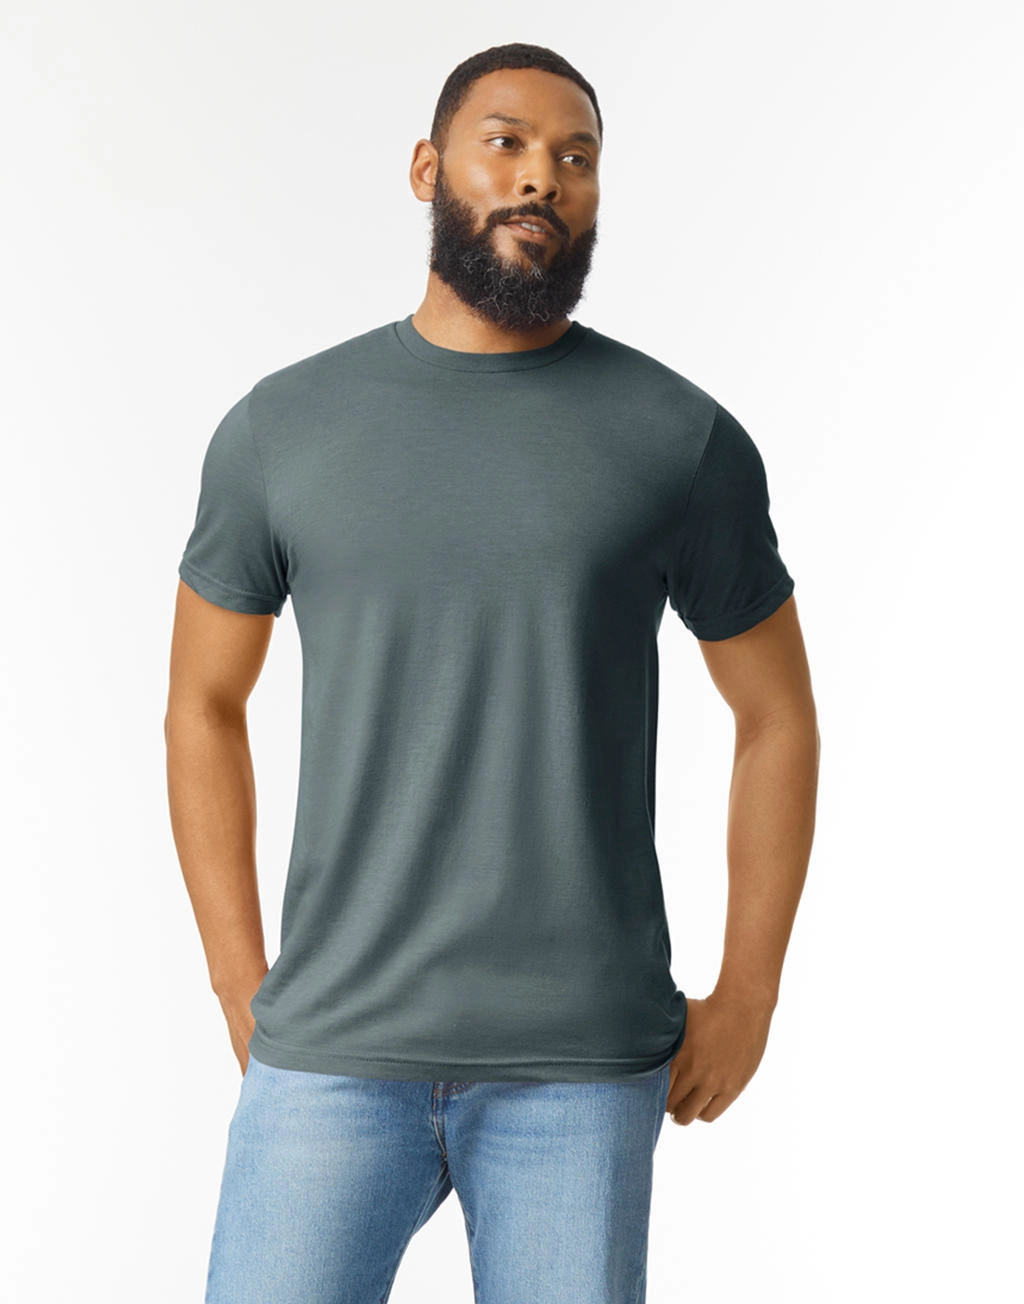 Softstyle CVC Adult T-Shirt zum Besticken und Bedrucken mit Ihren Logo, Schriftzug oder Motiv.